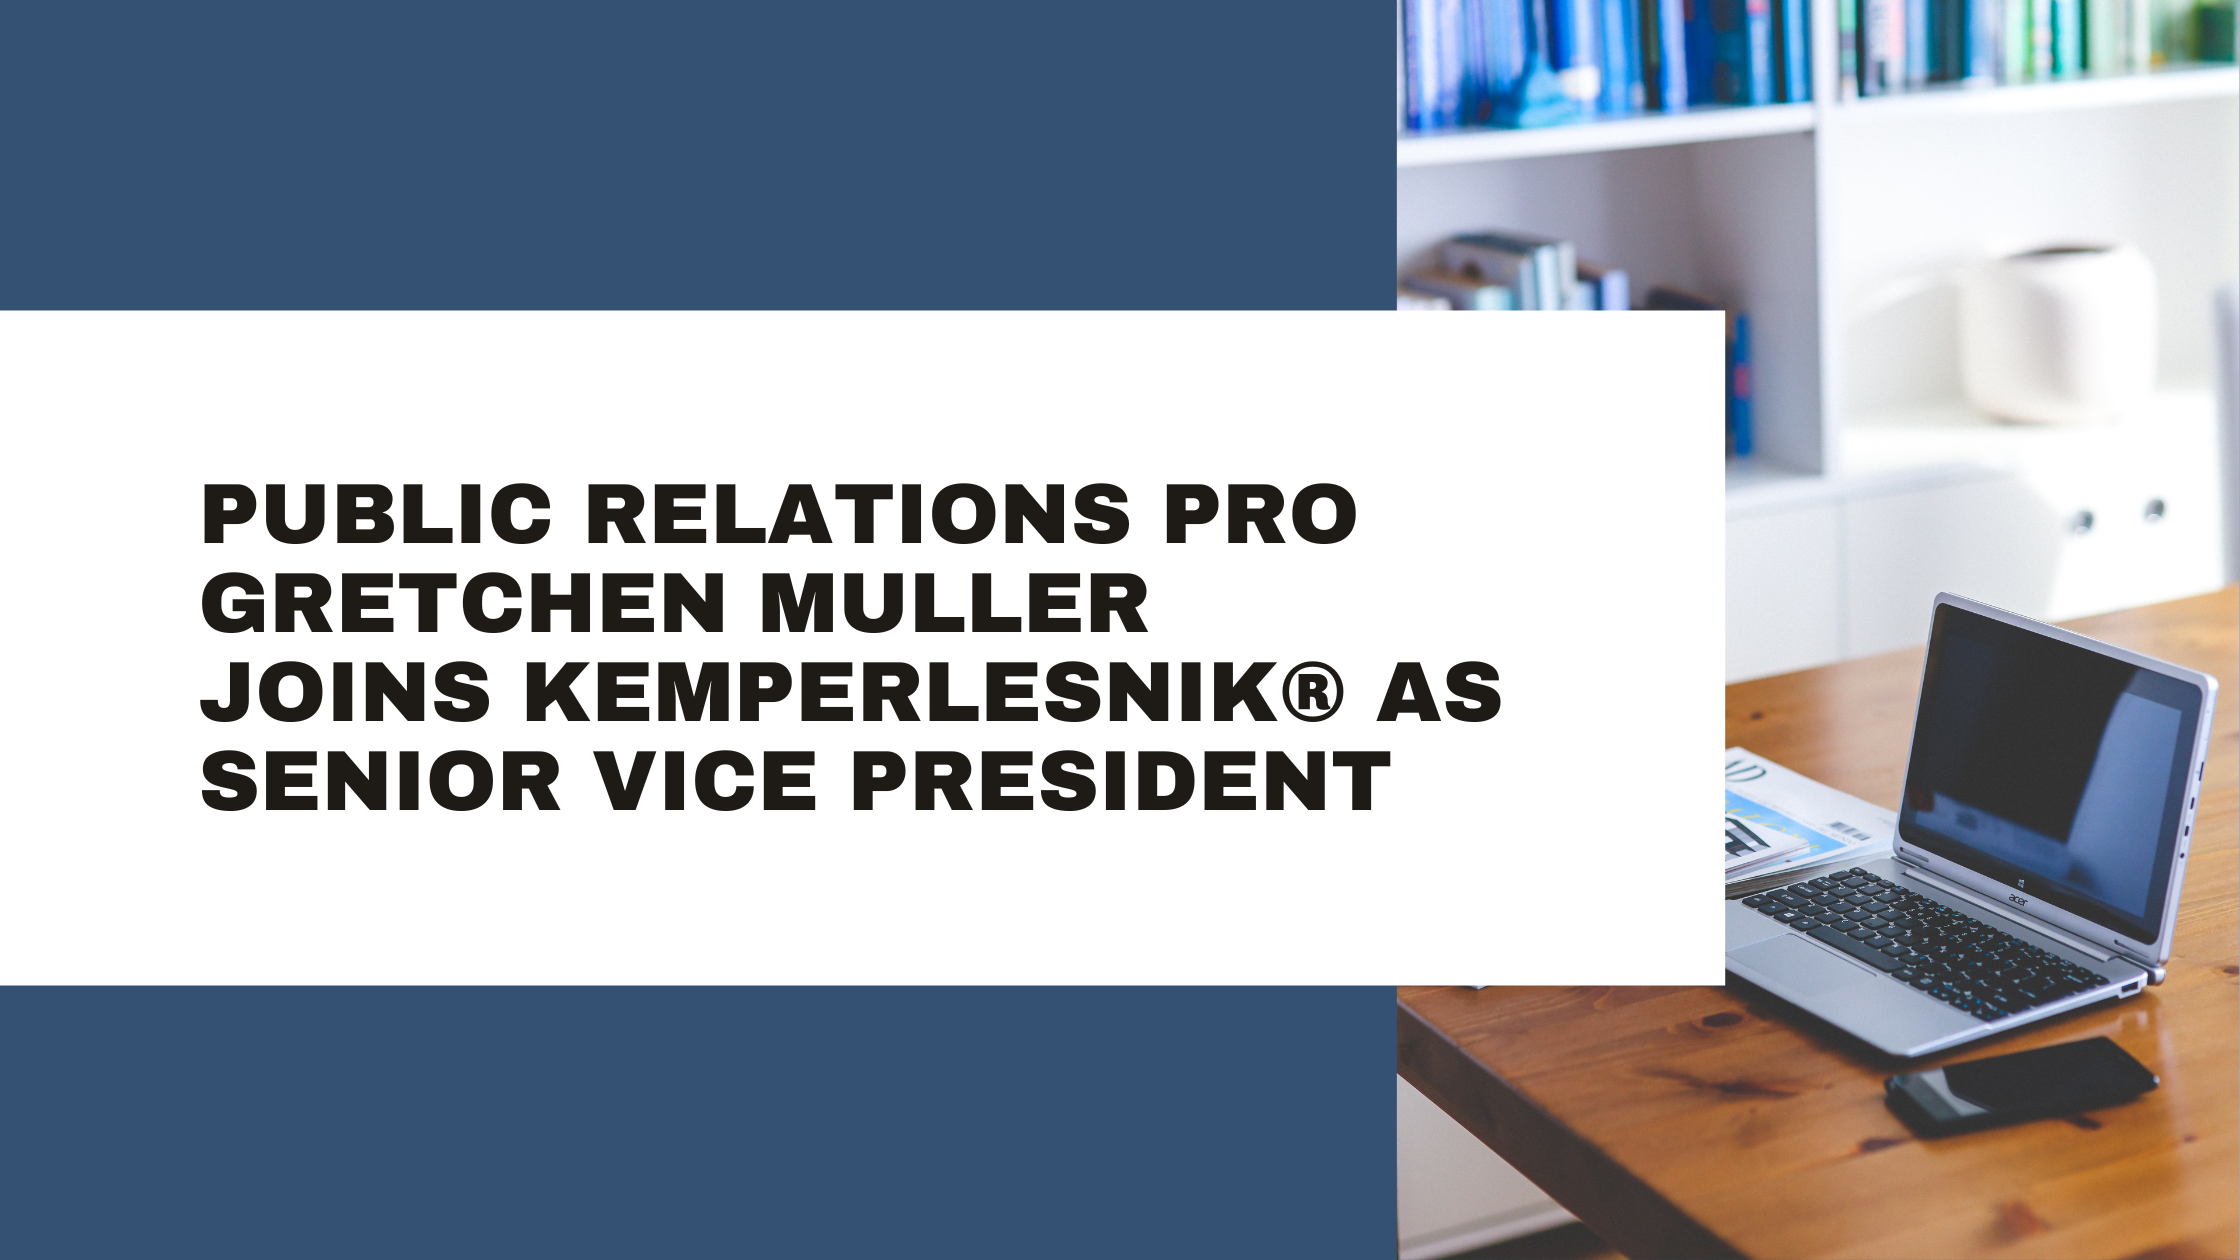 Public Relations Pro Gretchen Muller Joins KemperLesnik as Senior Vice President